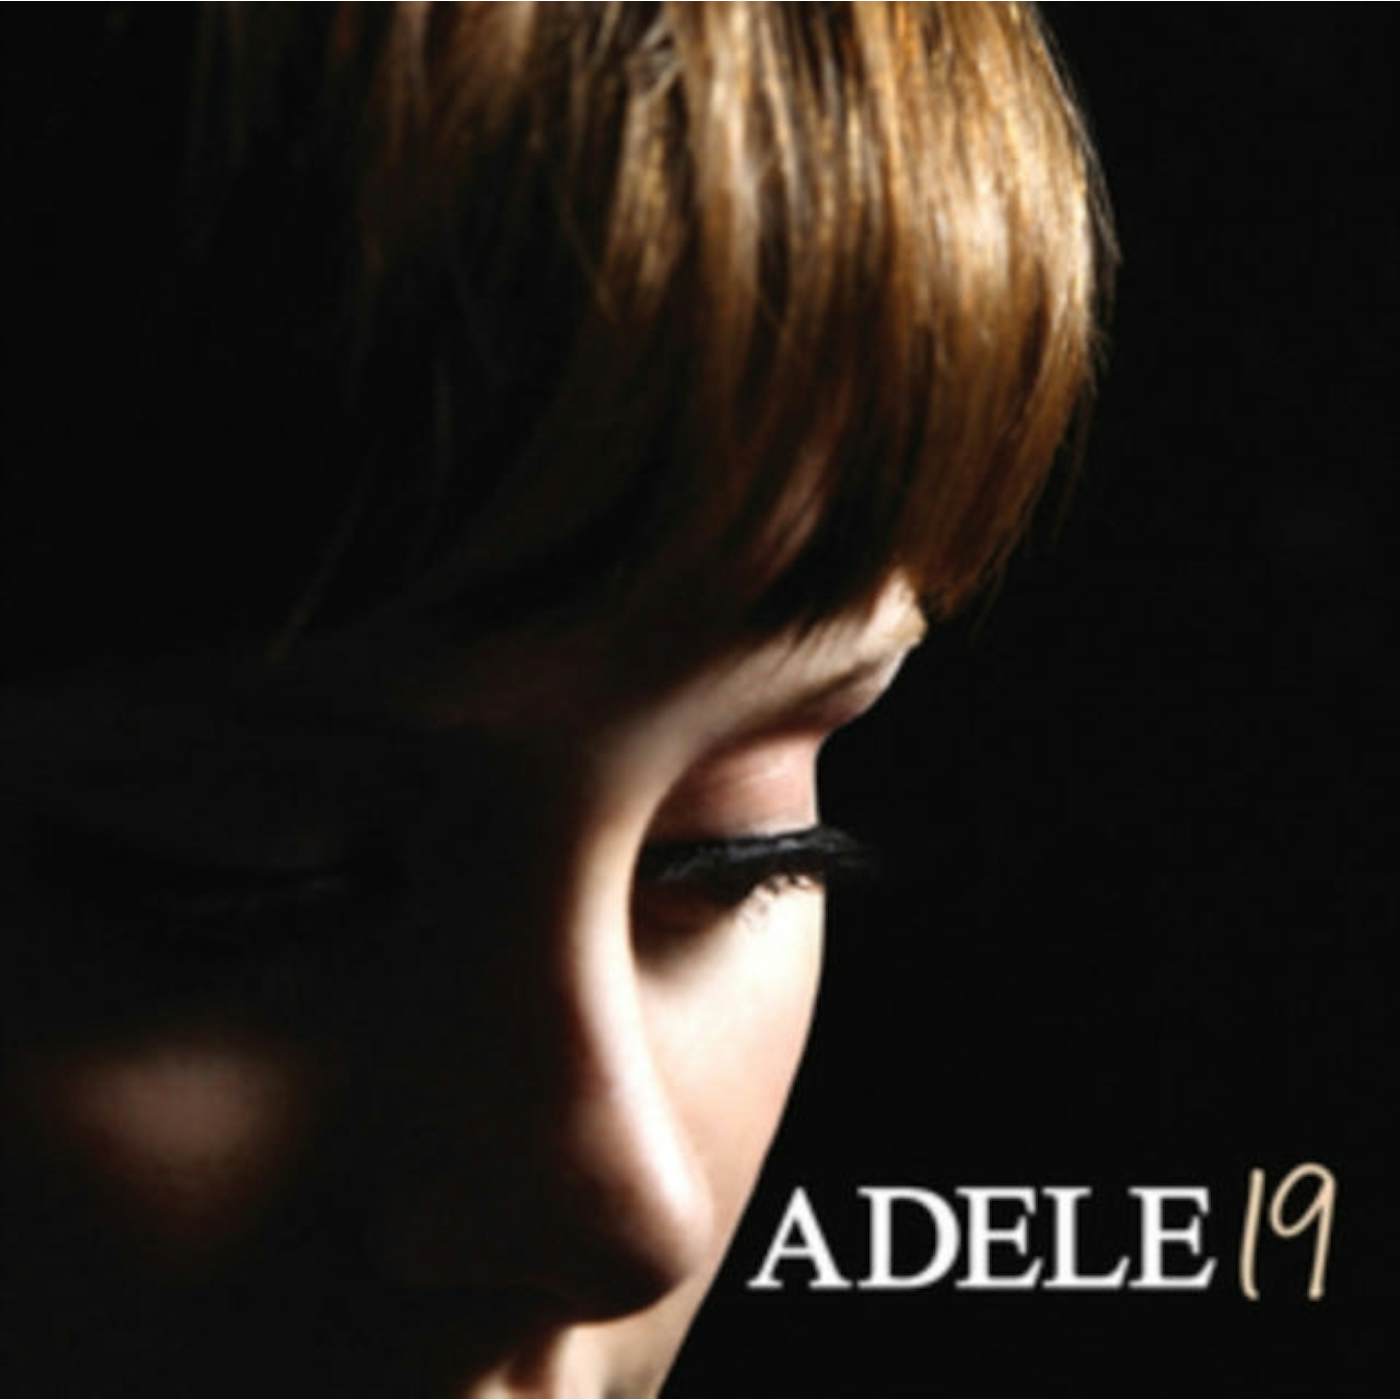 Adele CD - 19